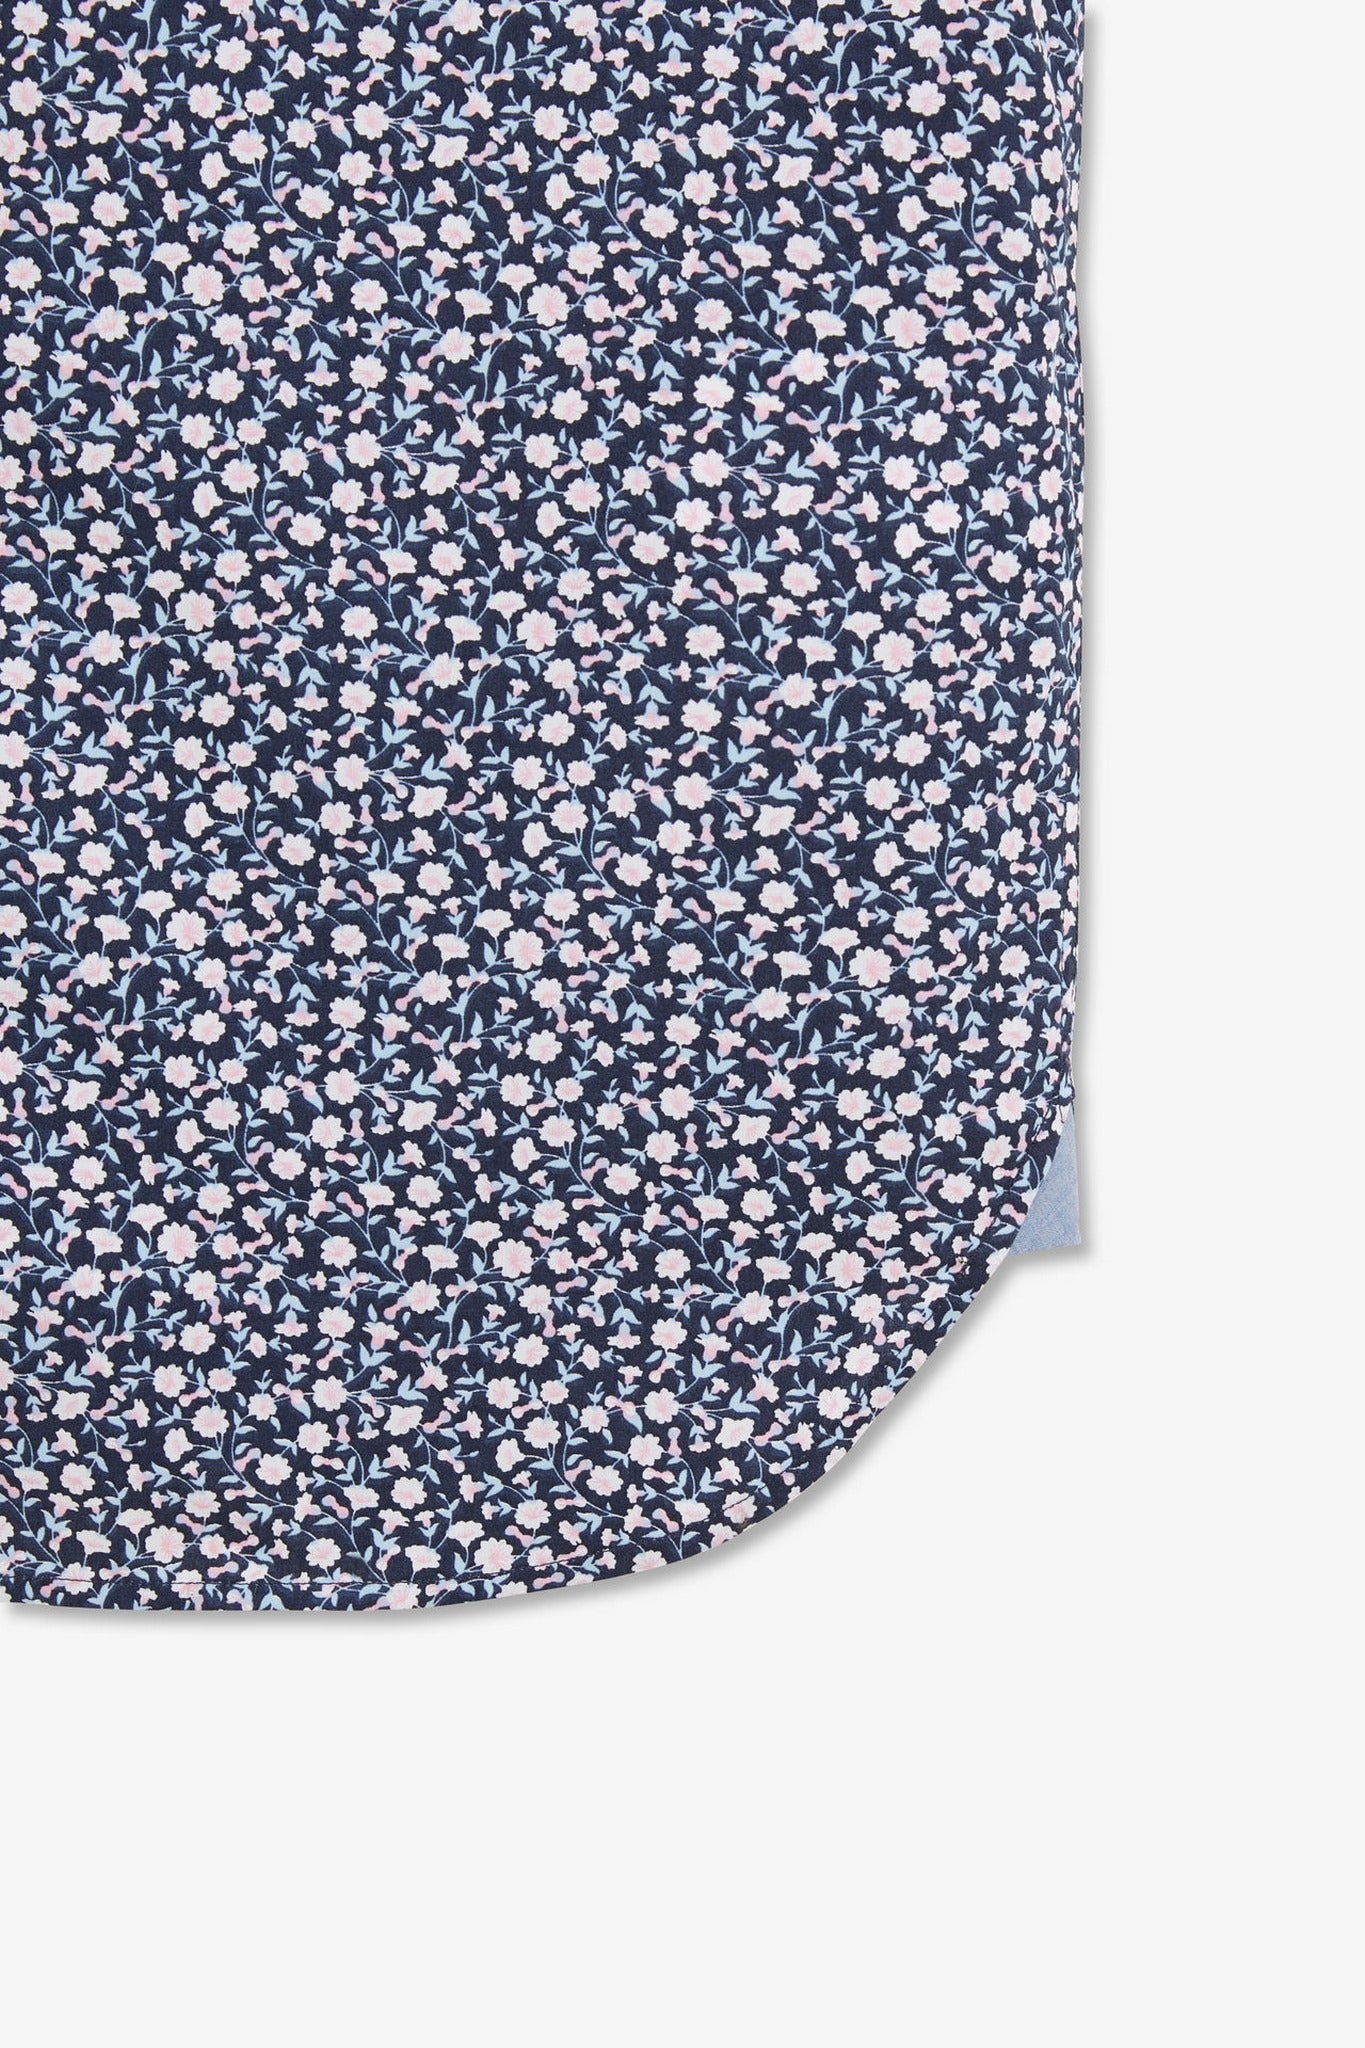 Chemisette bleu marine imprimée exclusif fleurs - Image 9